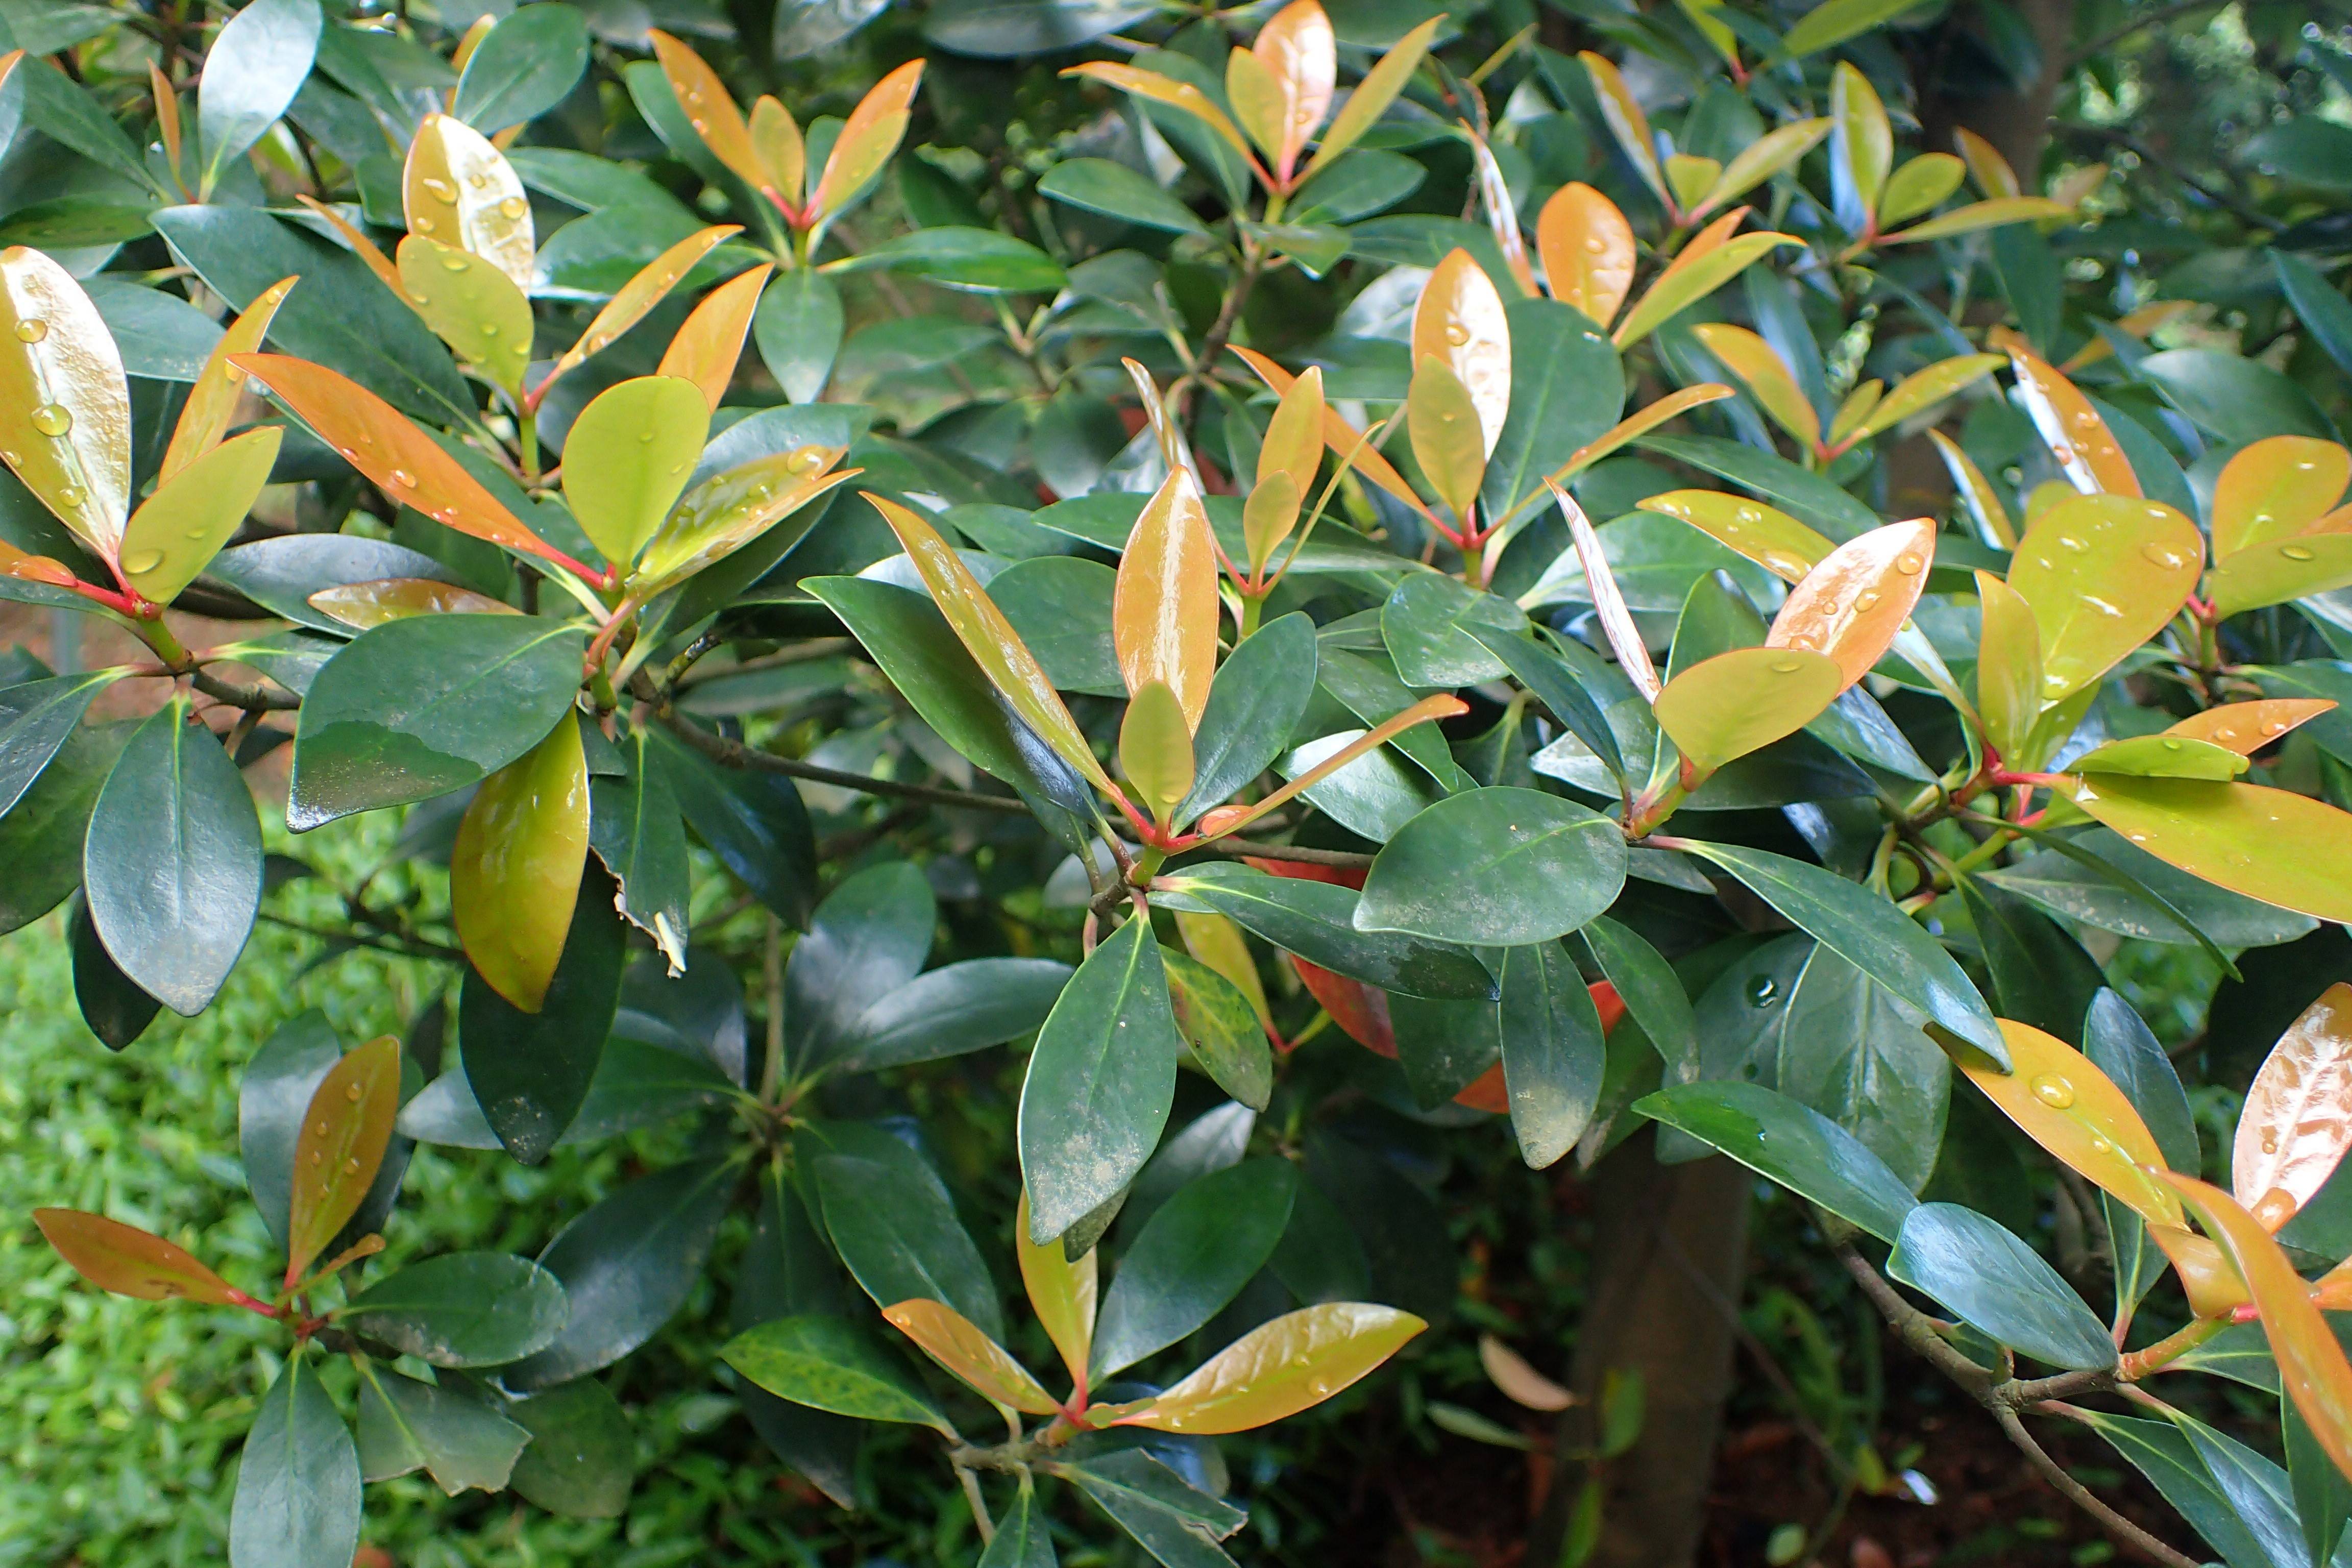 orange-green leaves on brown stems